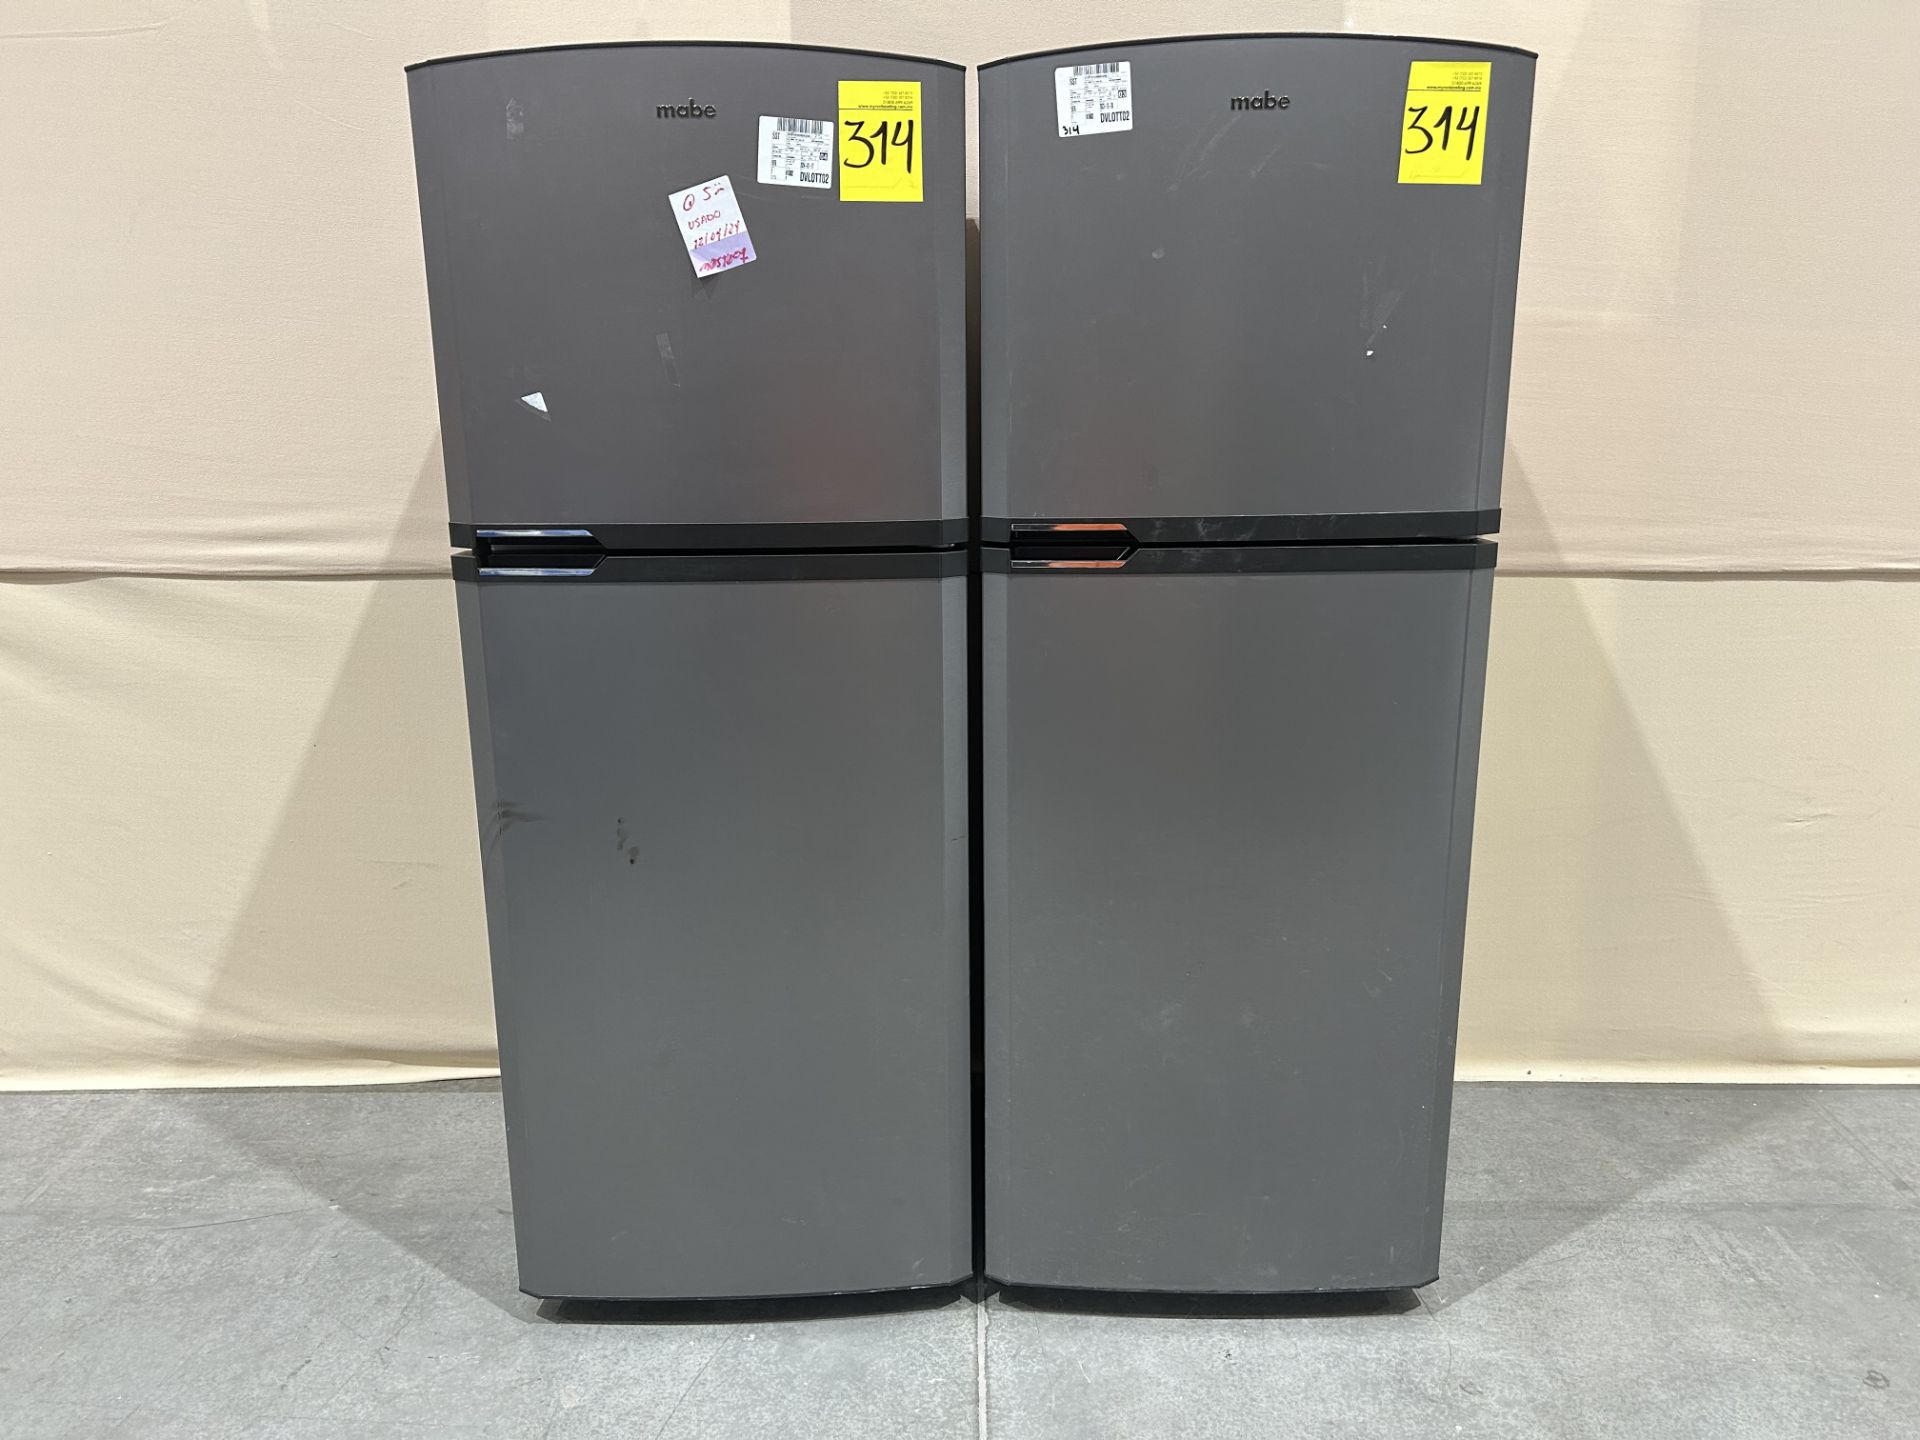 Lote de 2 refrigeradores contiene: 1 Refrigerador Marca MABE, Modelo RME360PVMRMA, Serie 822367, Co